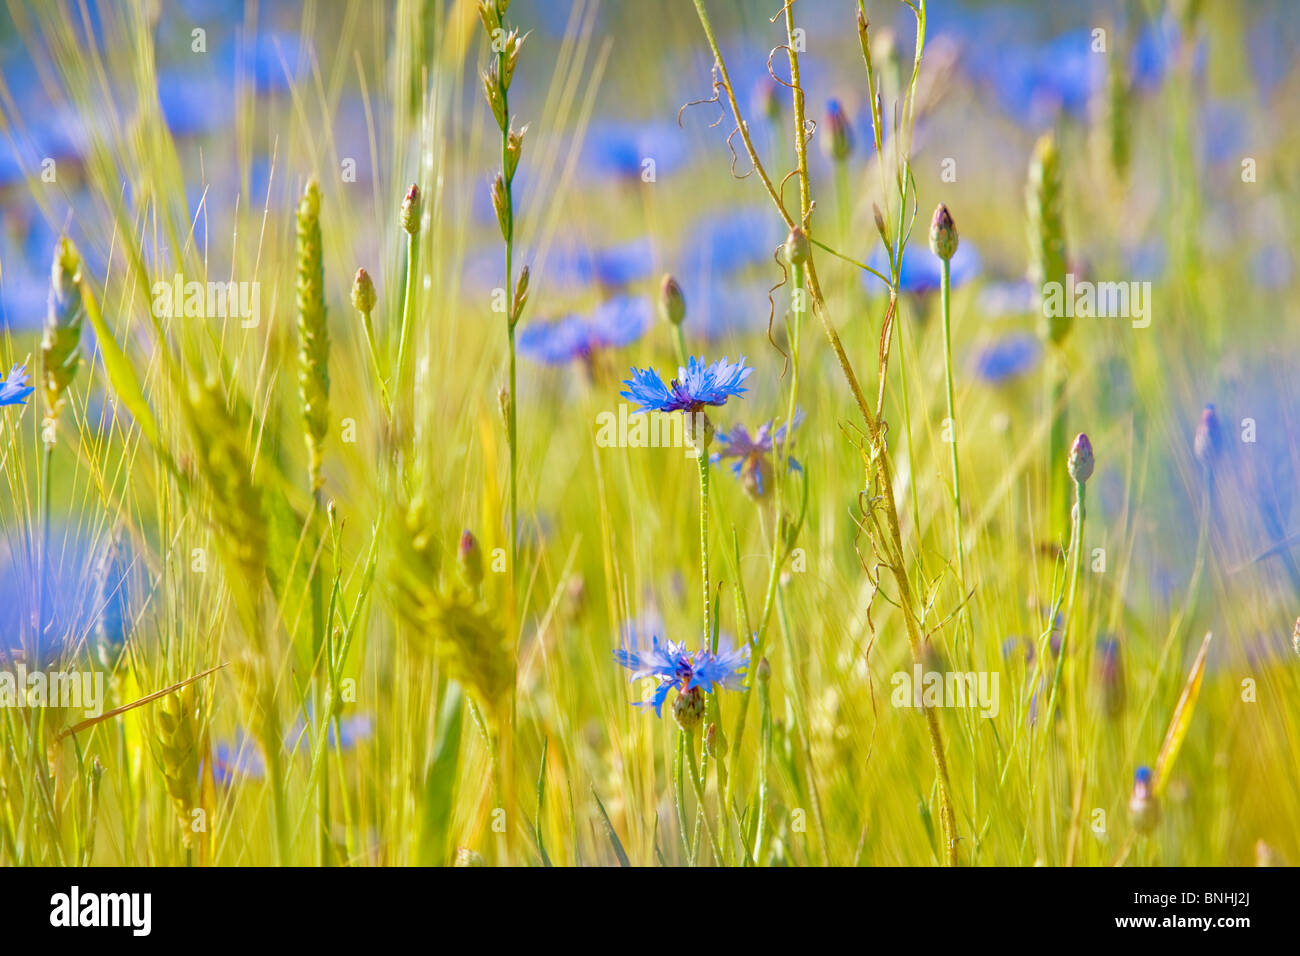 Tschechische Republik südlichen Böhmen Bereich Wildblumen Studium Taste Korb Blume Zusammenarbeit Boutonniere Blume centaurea Stockfoto